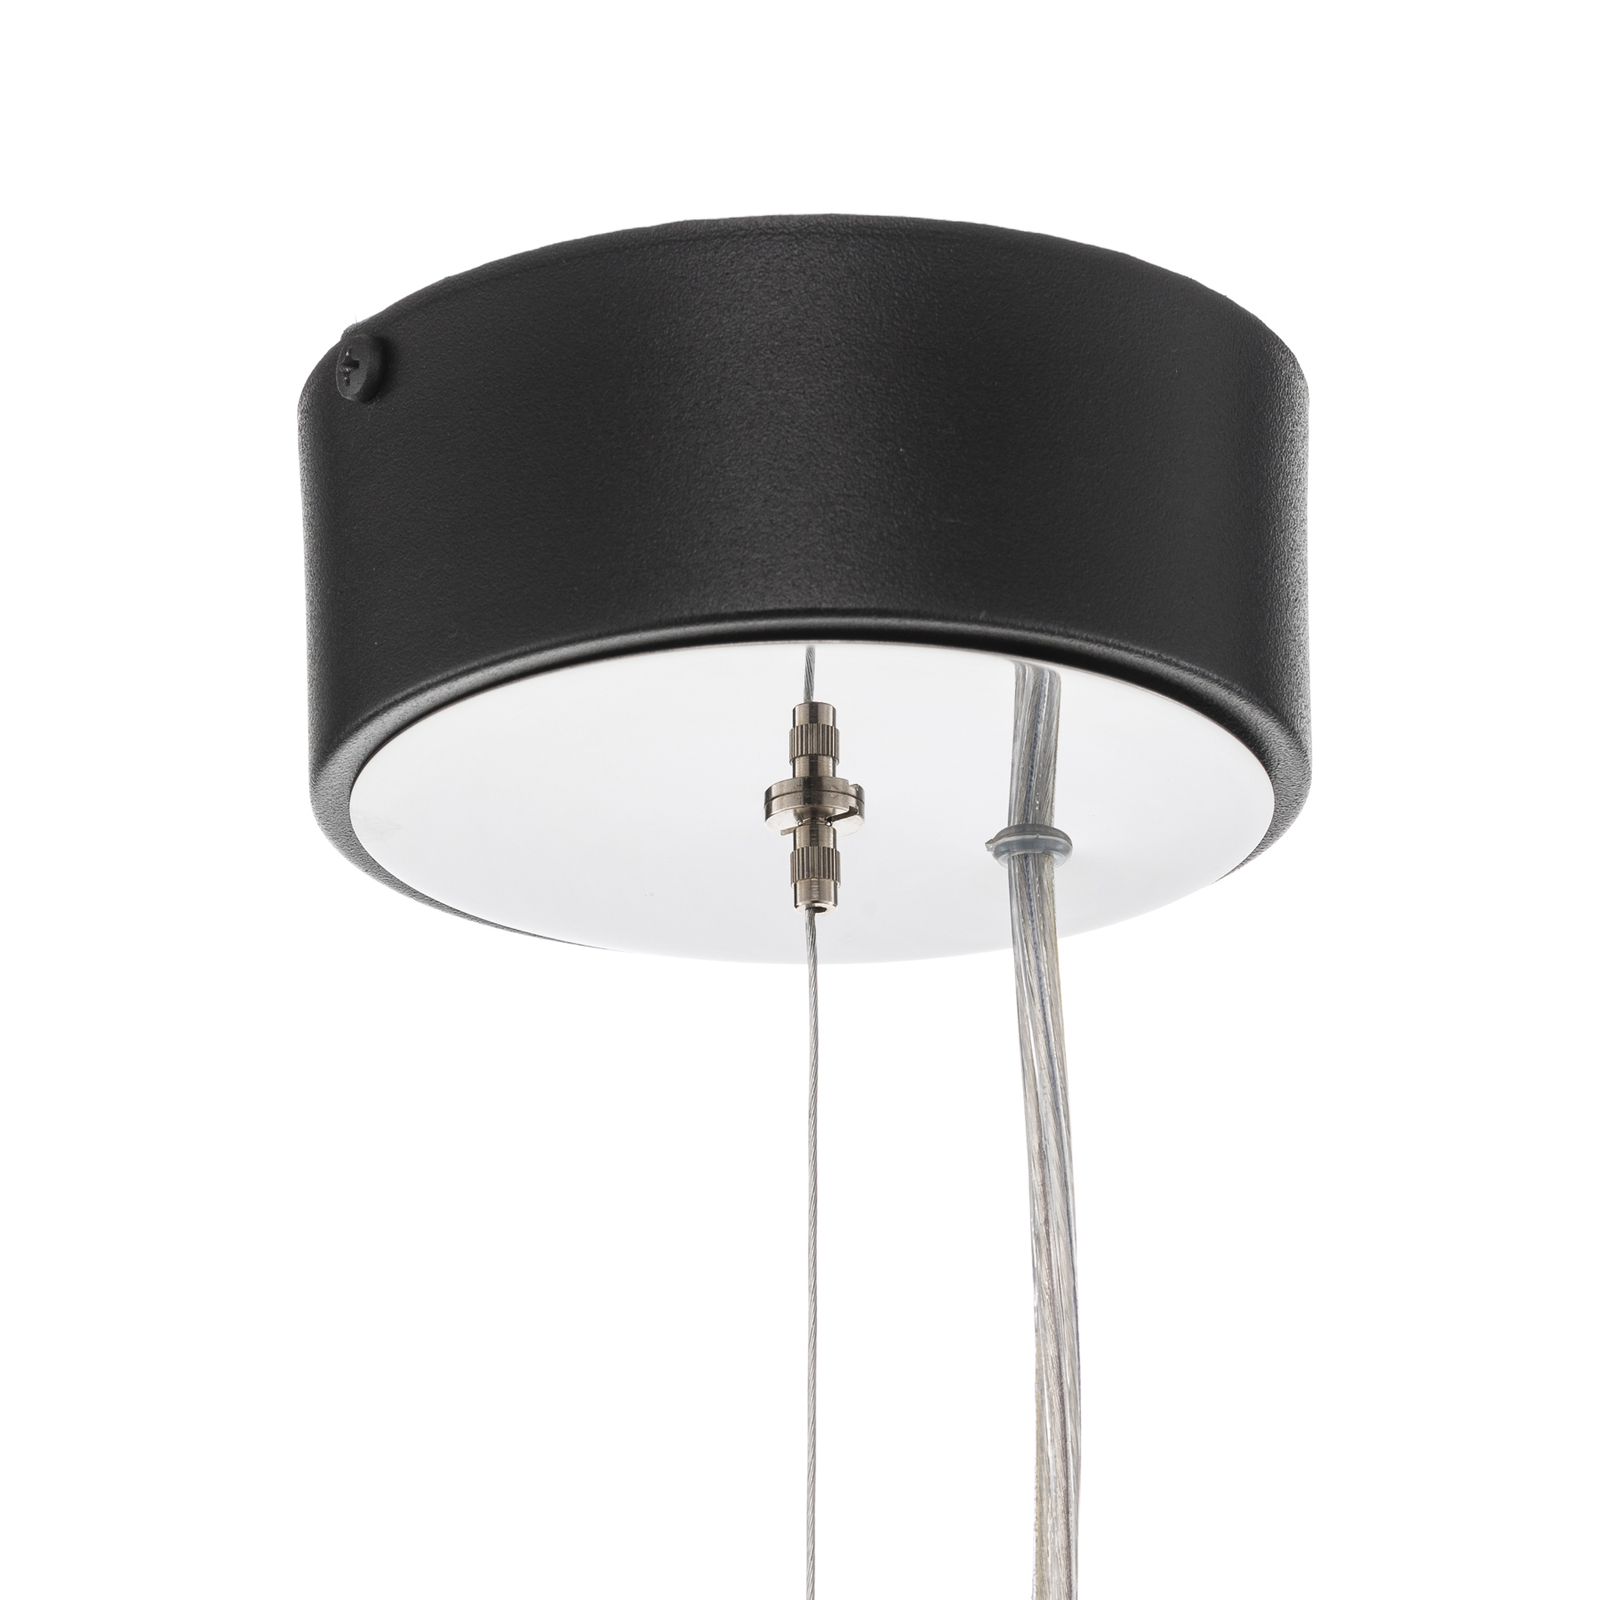 Vento pendant light, black, Ø 50 cm, metal, E27